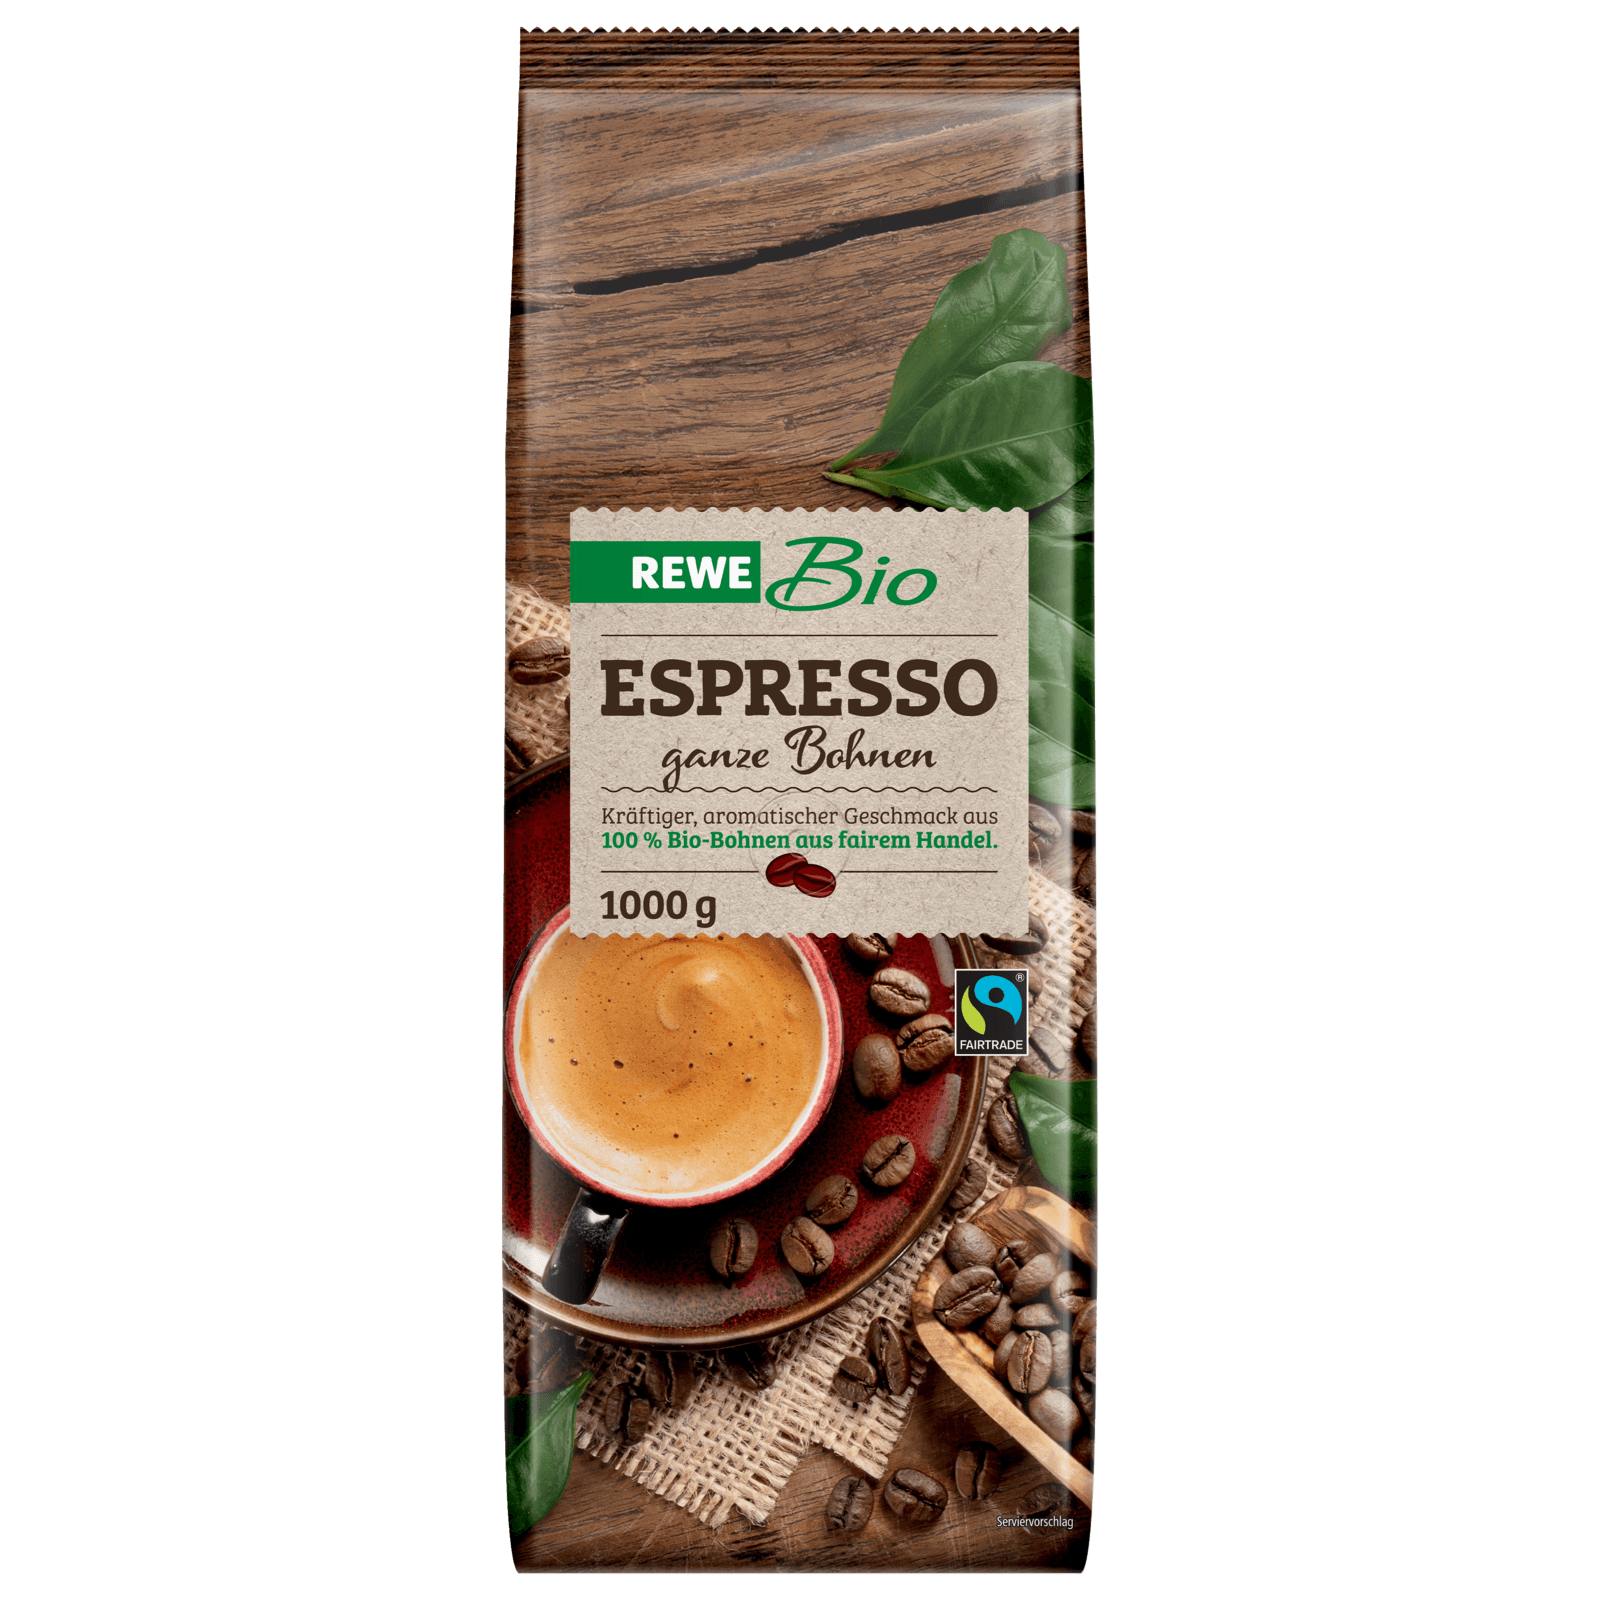 REWE Bio Espresso ganze Bohnen 1000g